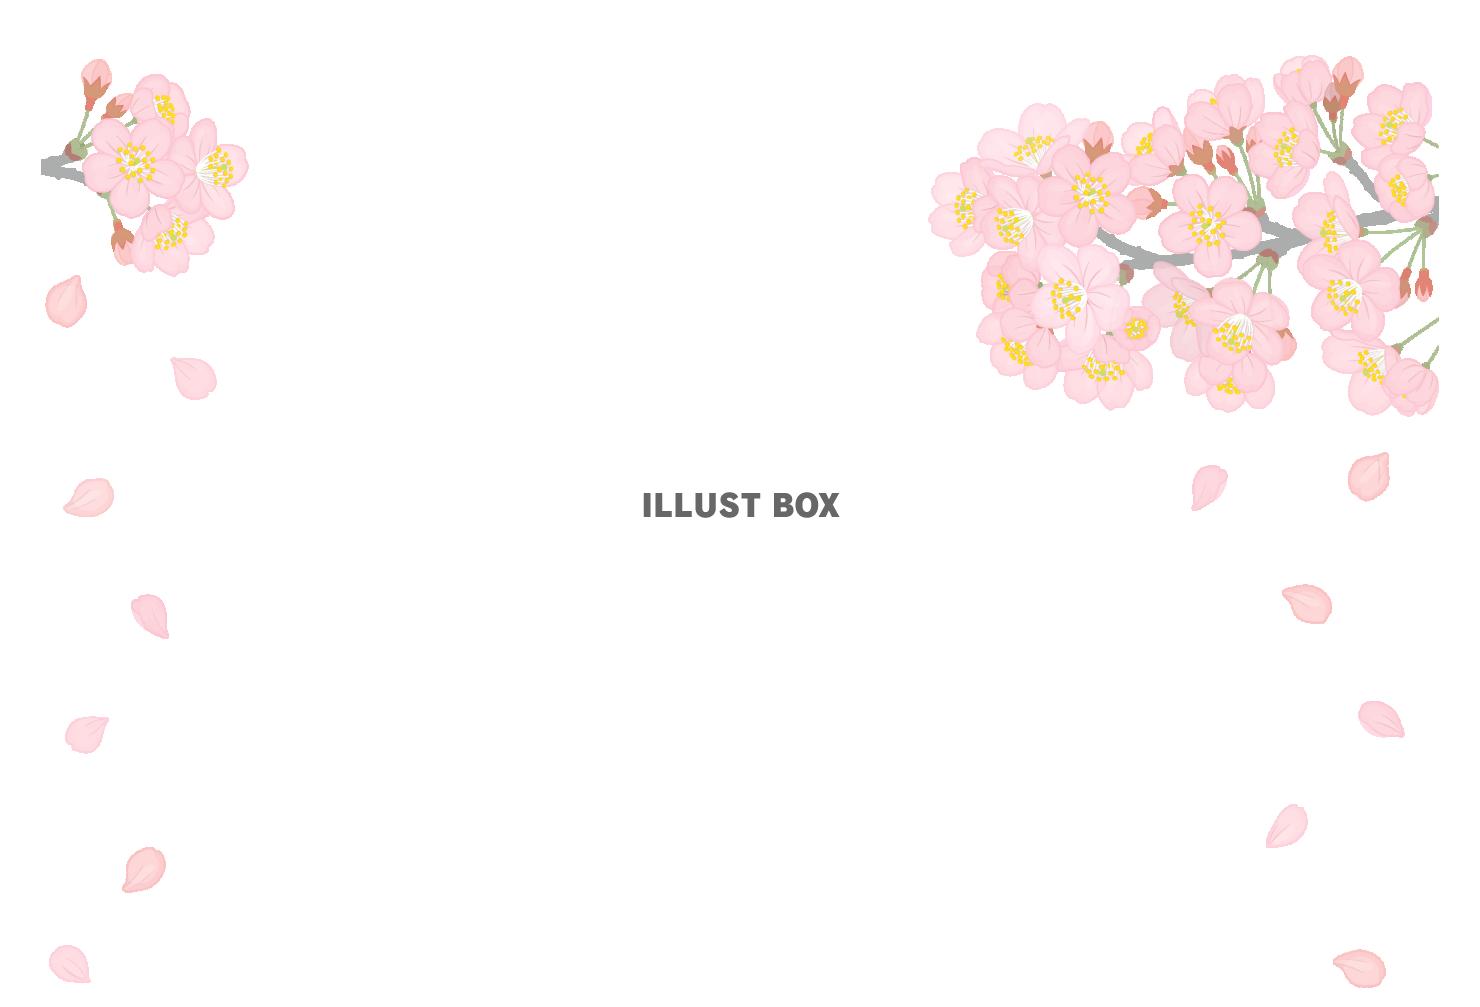 無料イラスト 満開の桜の花びらが散るイラスト